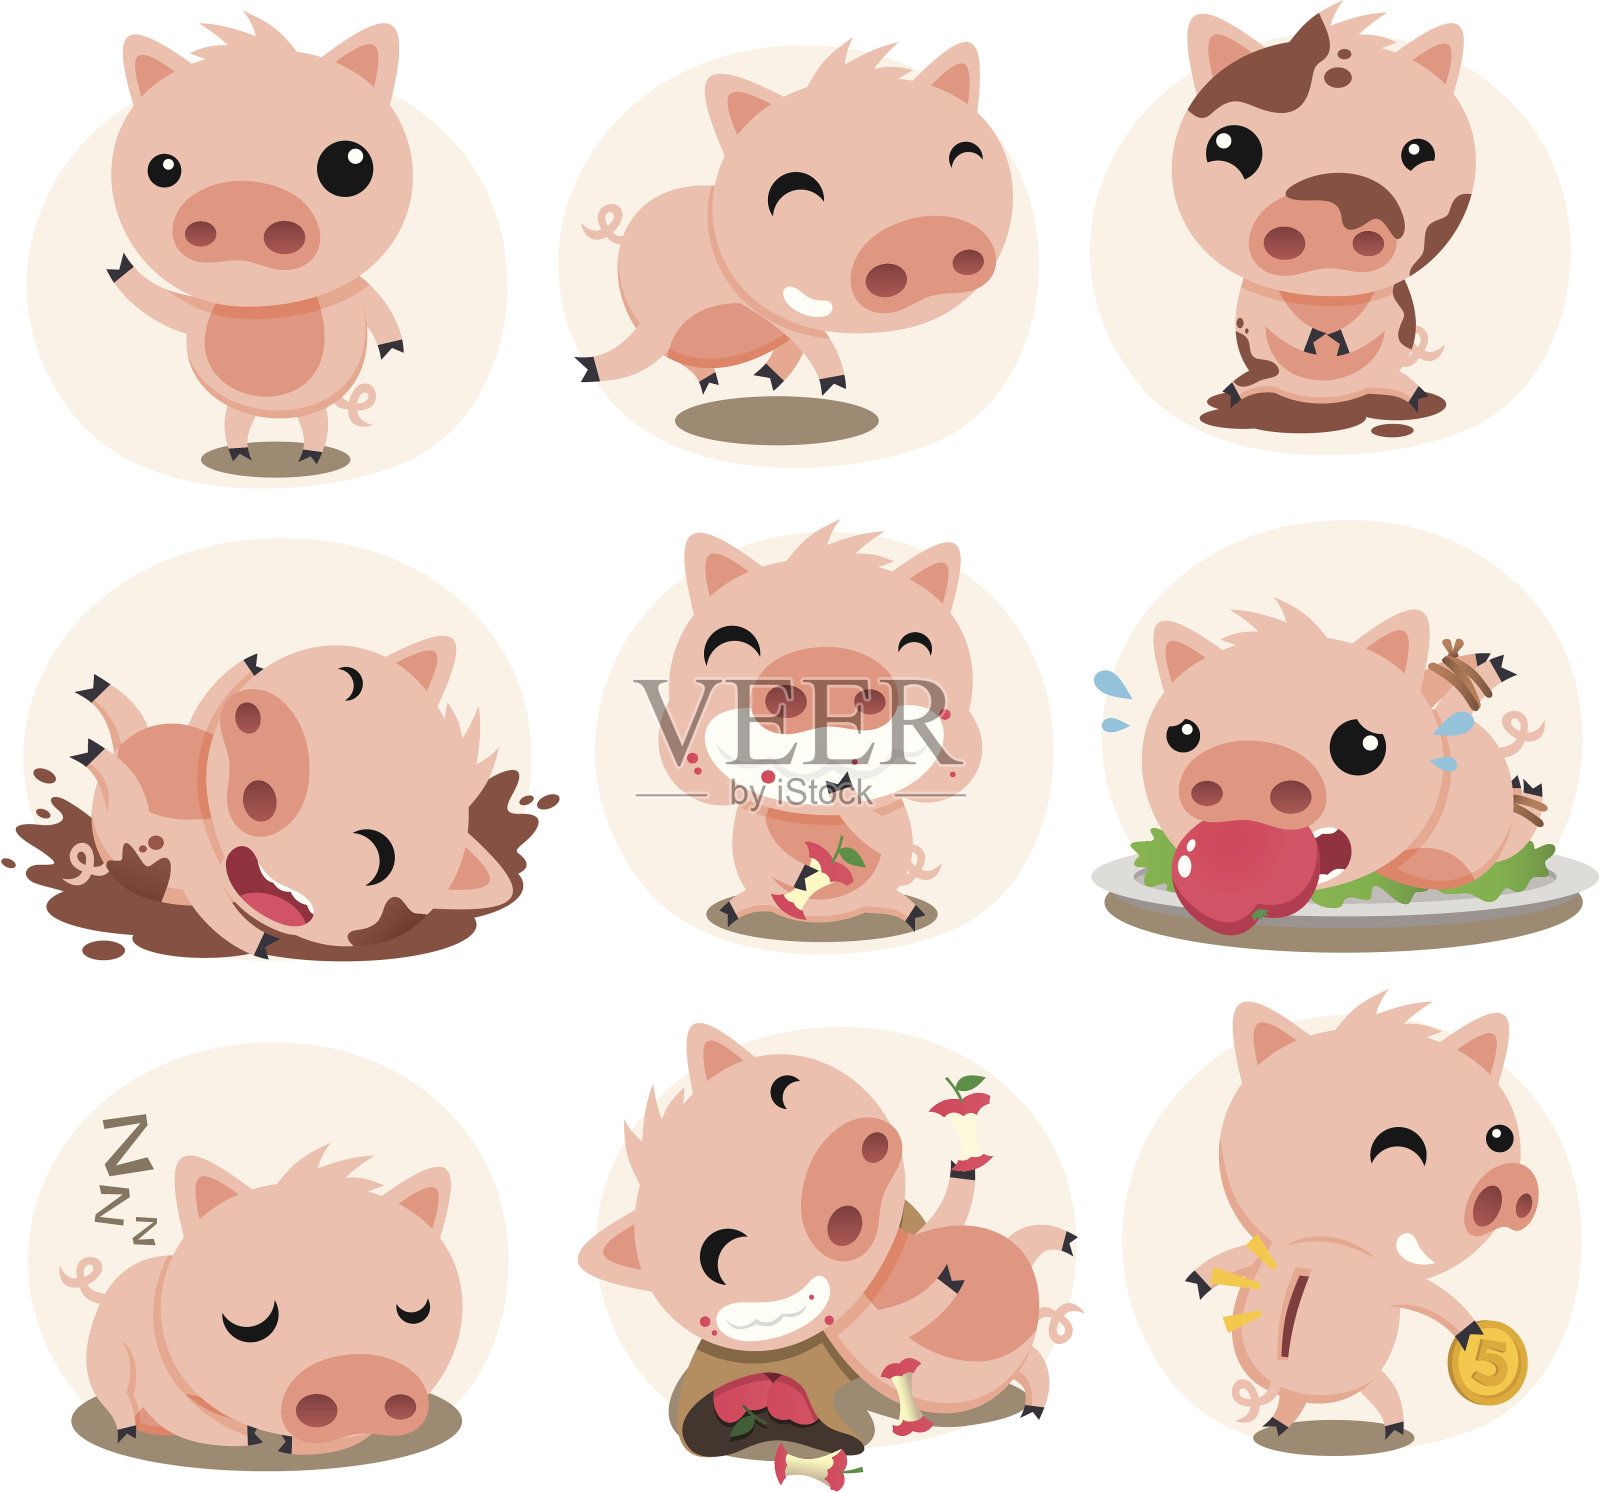 可爱的小猪在行动集合插画图片素材